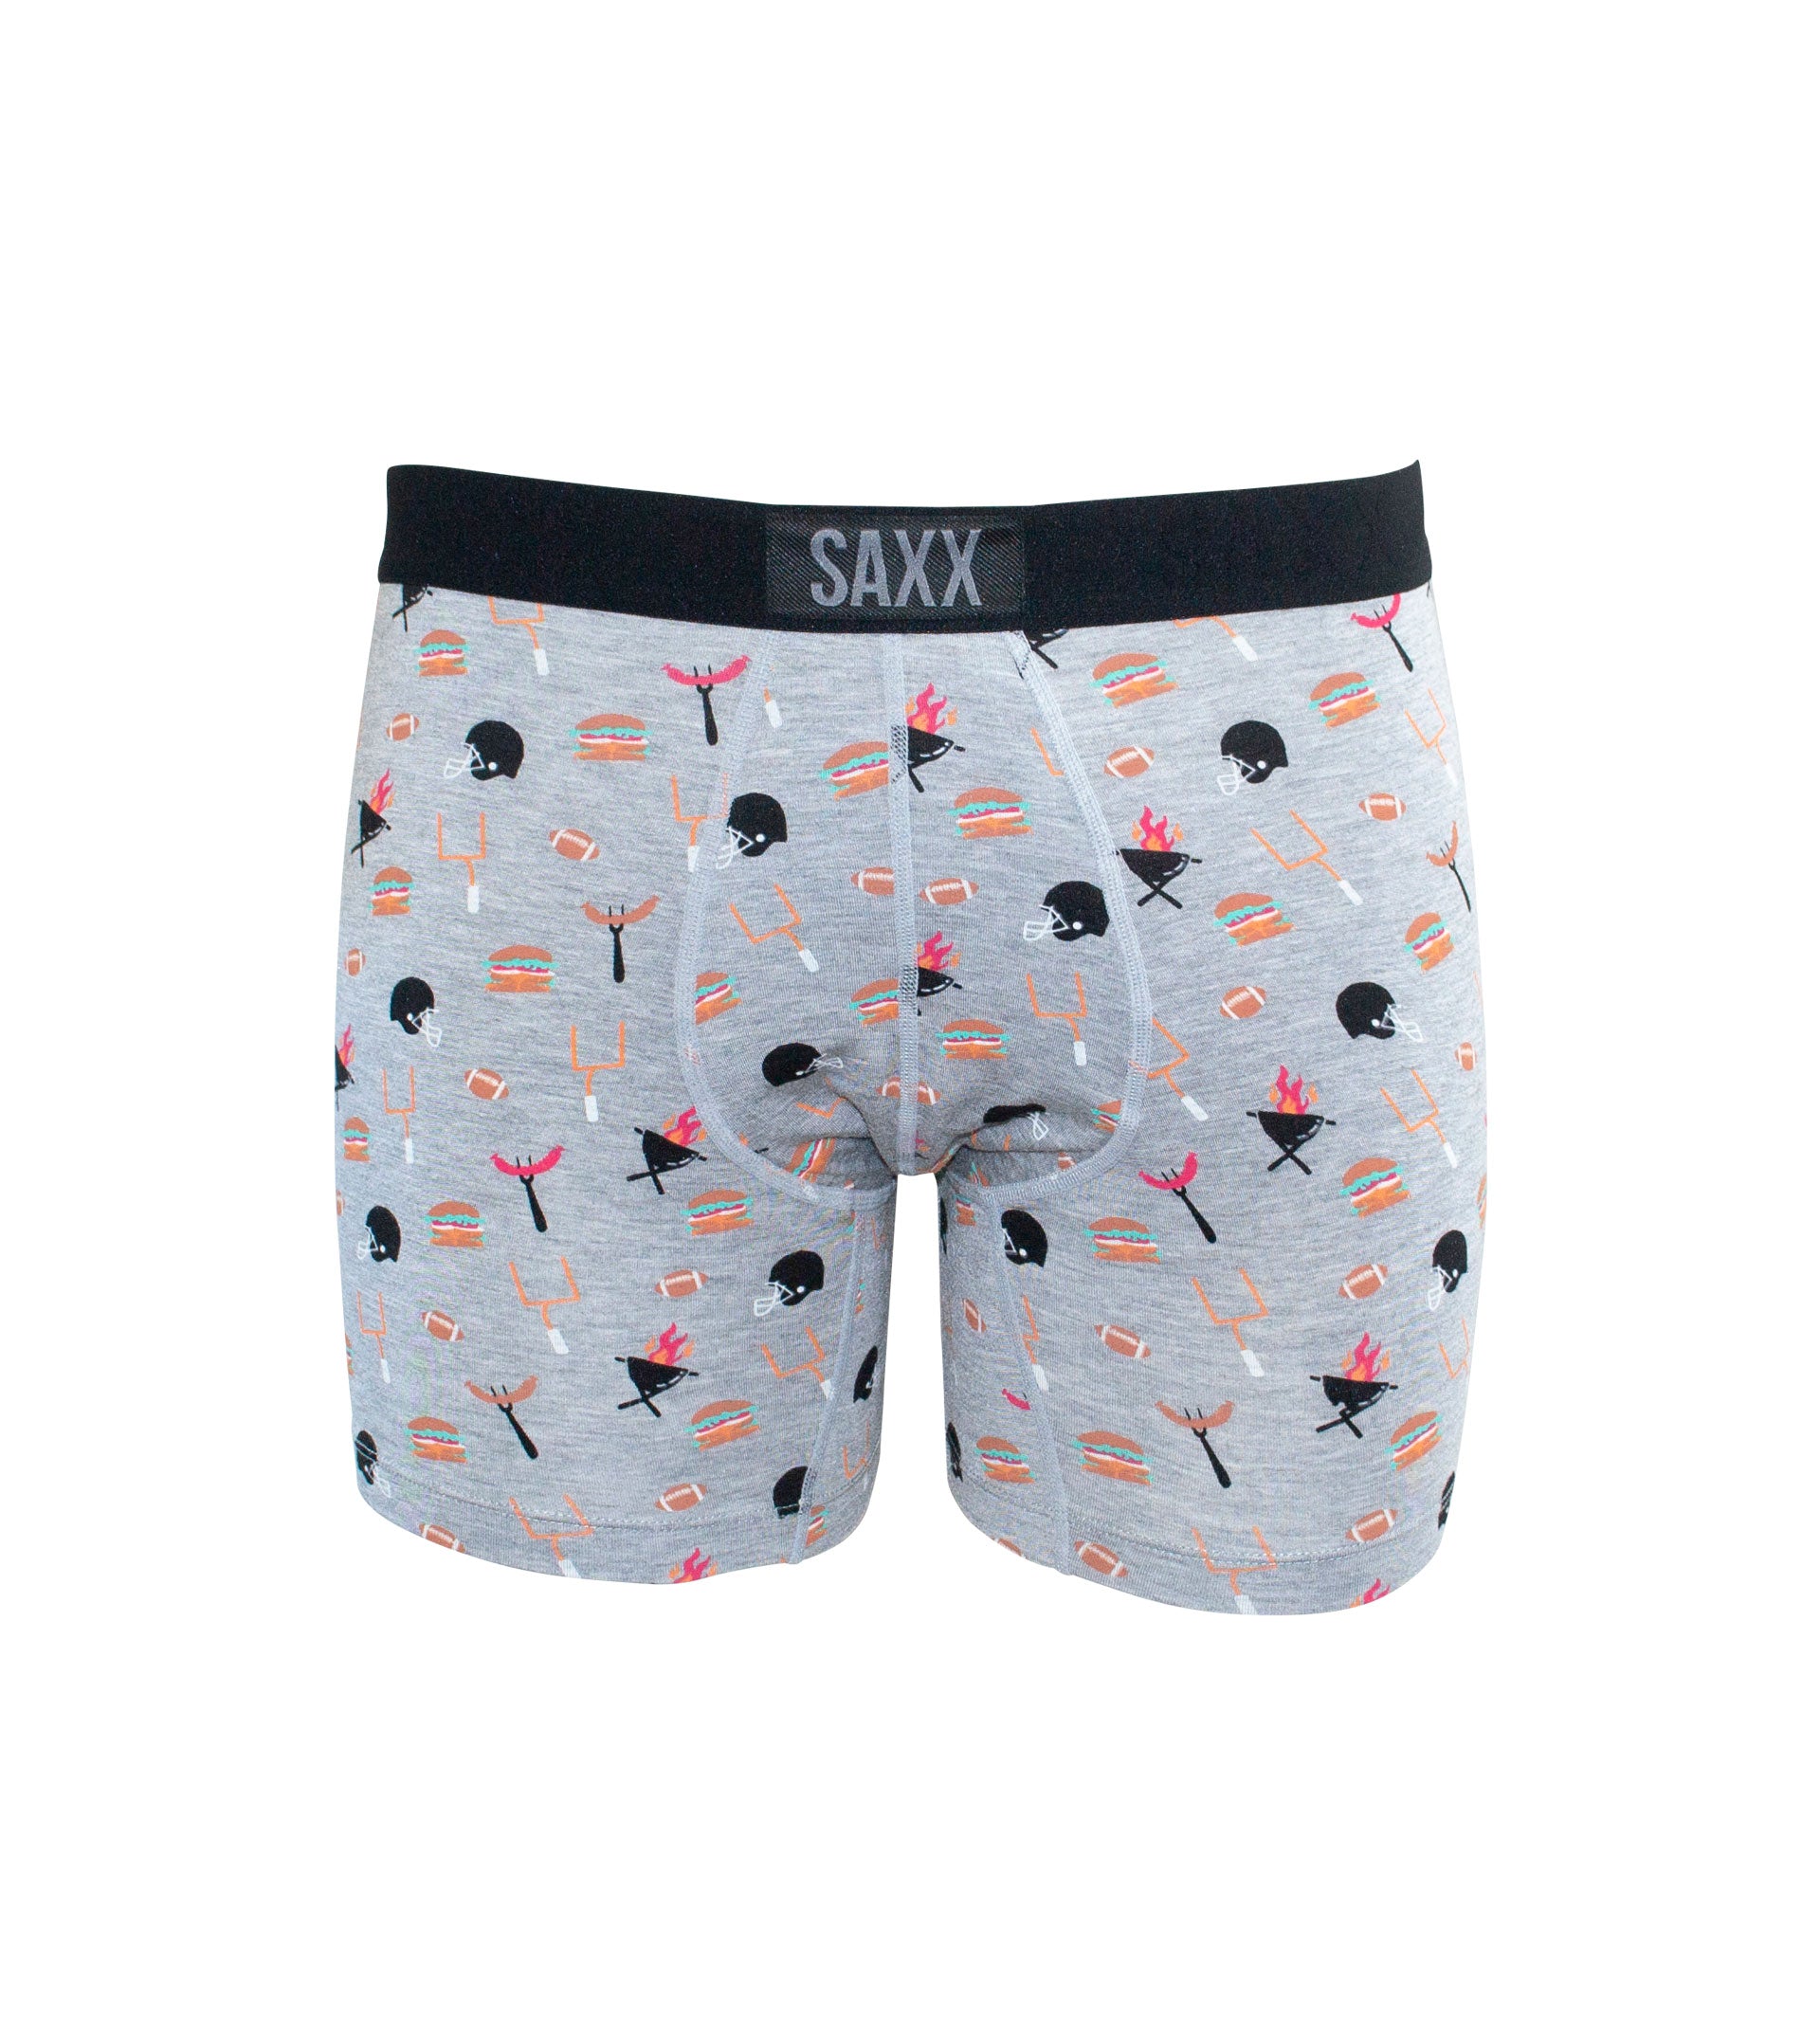 SAXX Vibe Boxer Brief +Colors